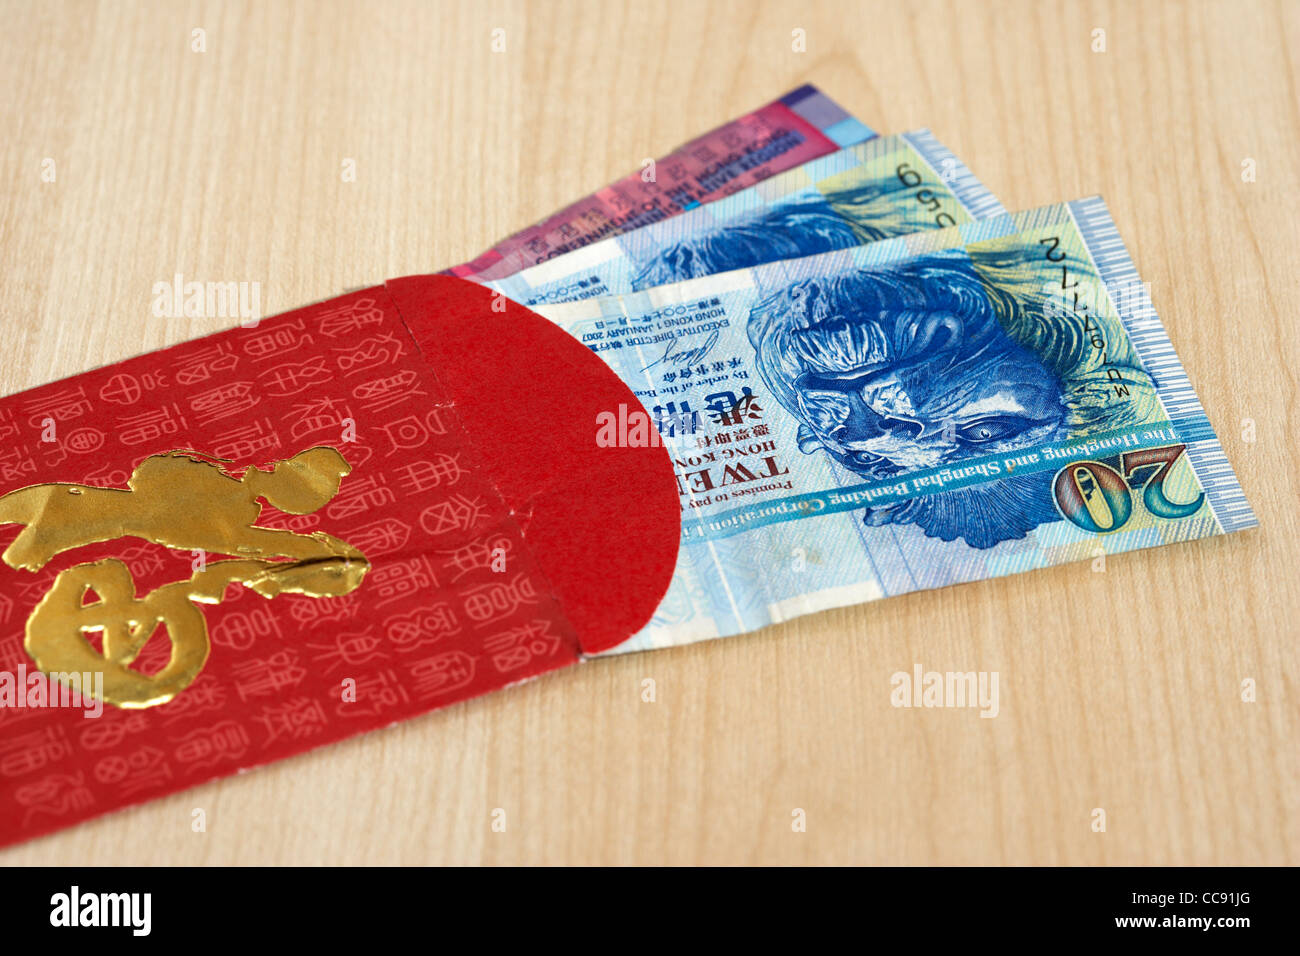 Hongkong-Dollar Bargeld Währung in einem rot-goldenen Geschenk Umschlag traditionell in China an Silvester oder Hochzeiten gegeben Stockfoto